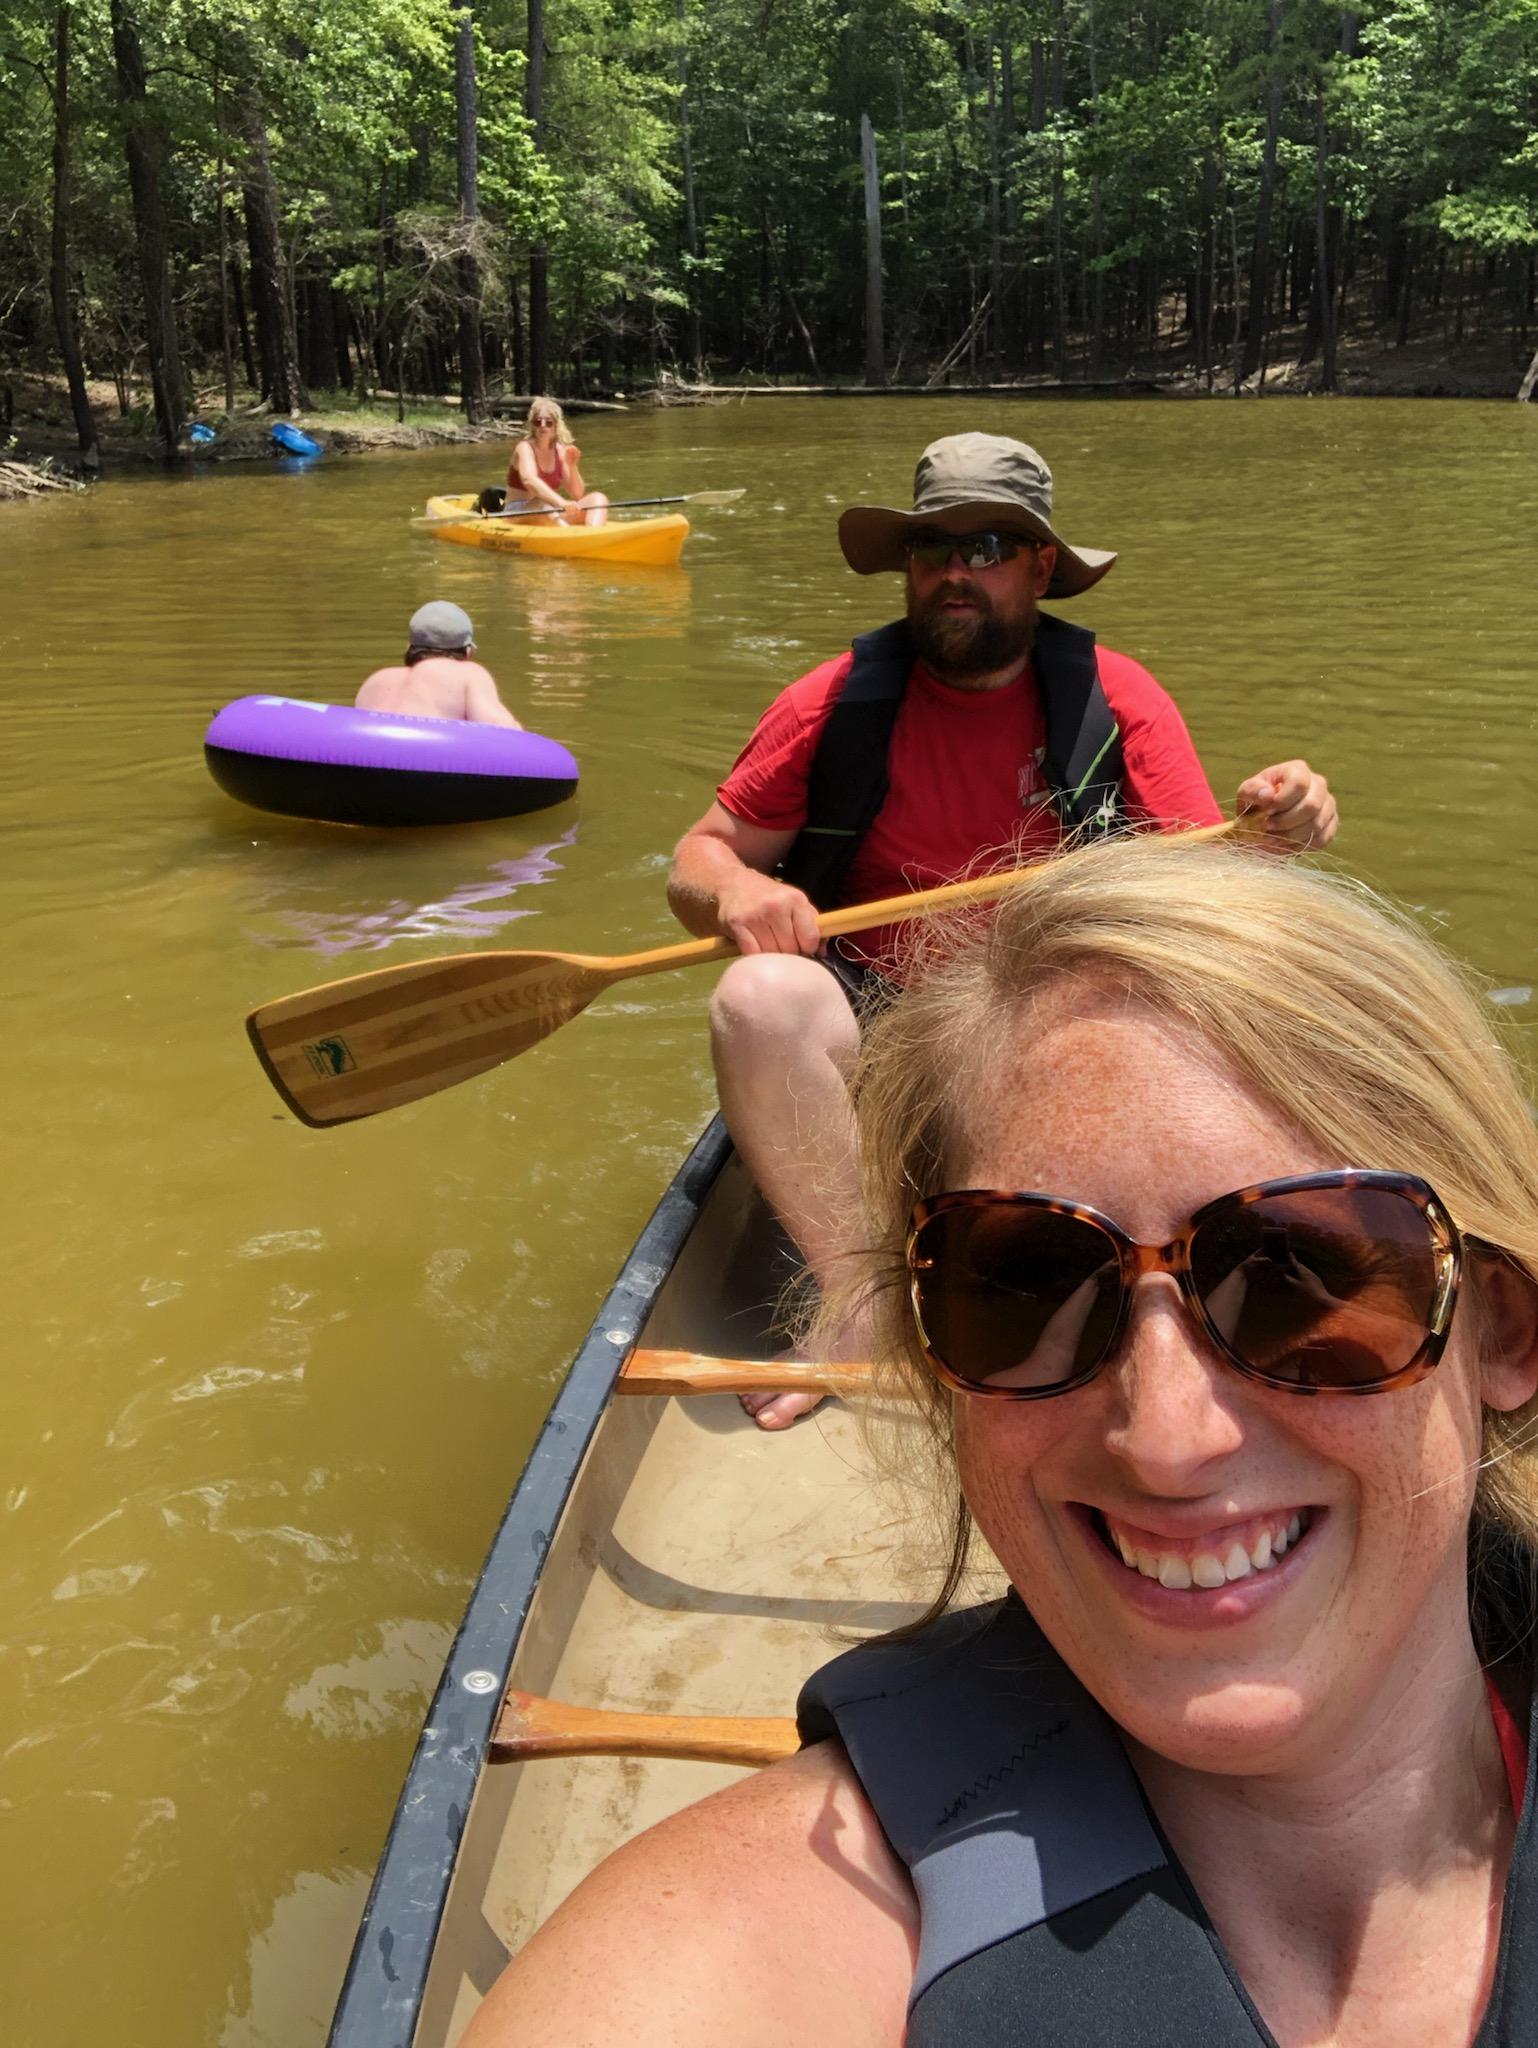 Cory and Ashley enjoy kayaking